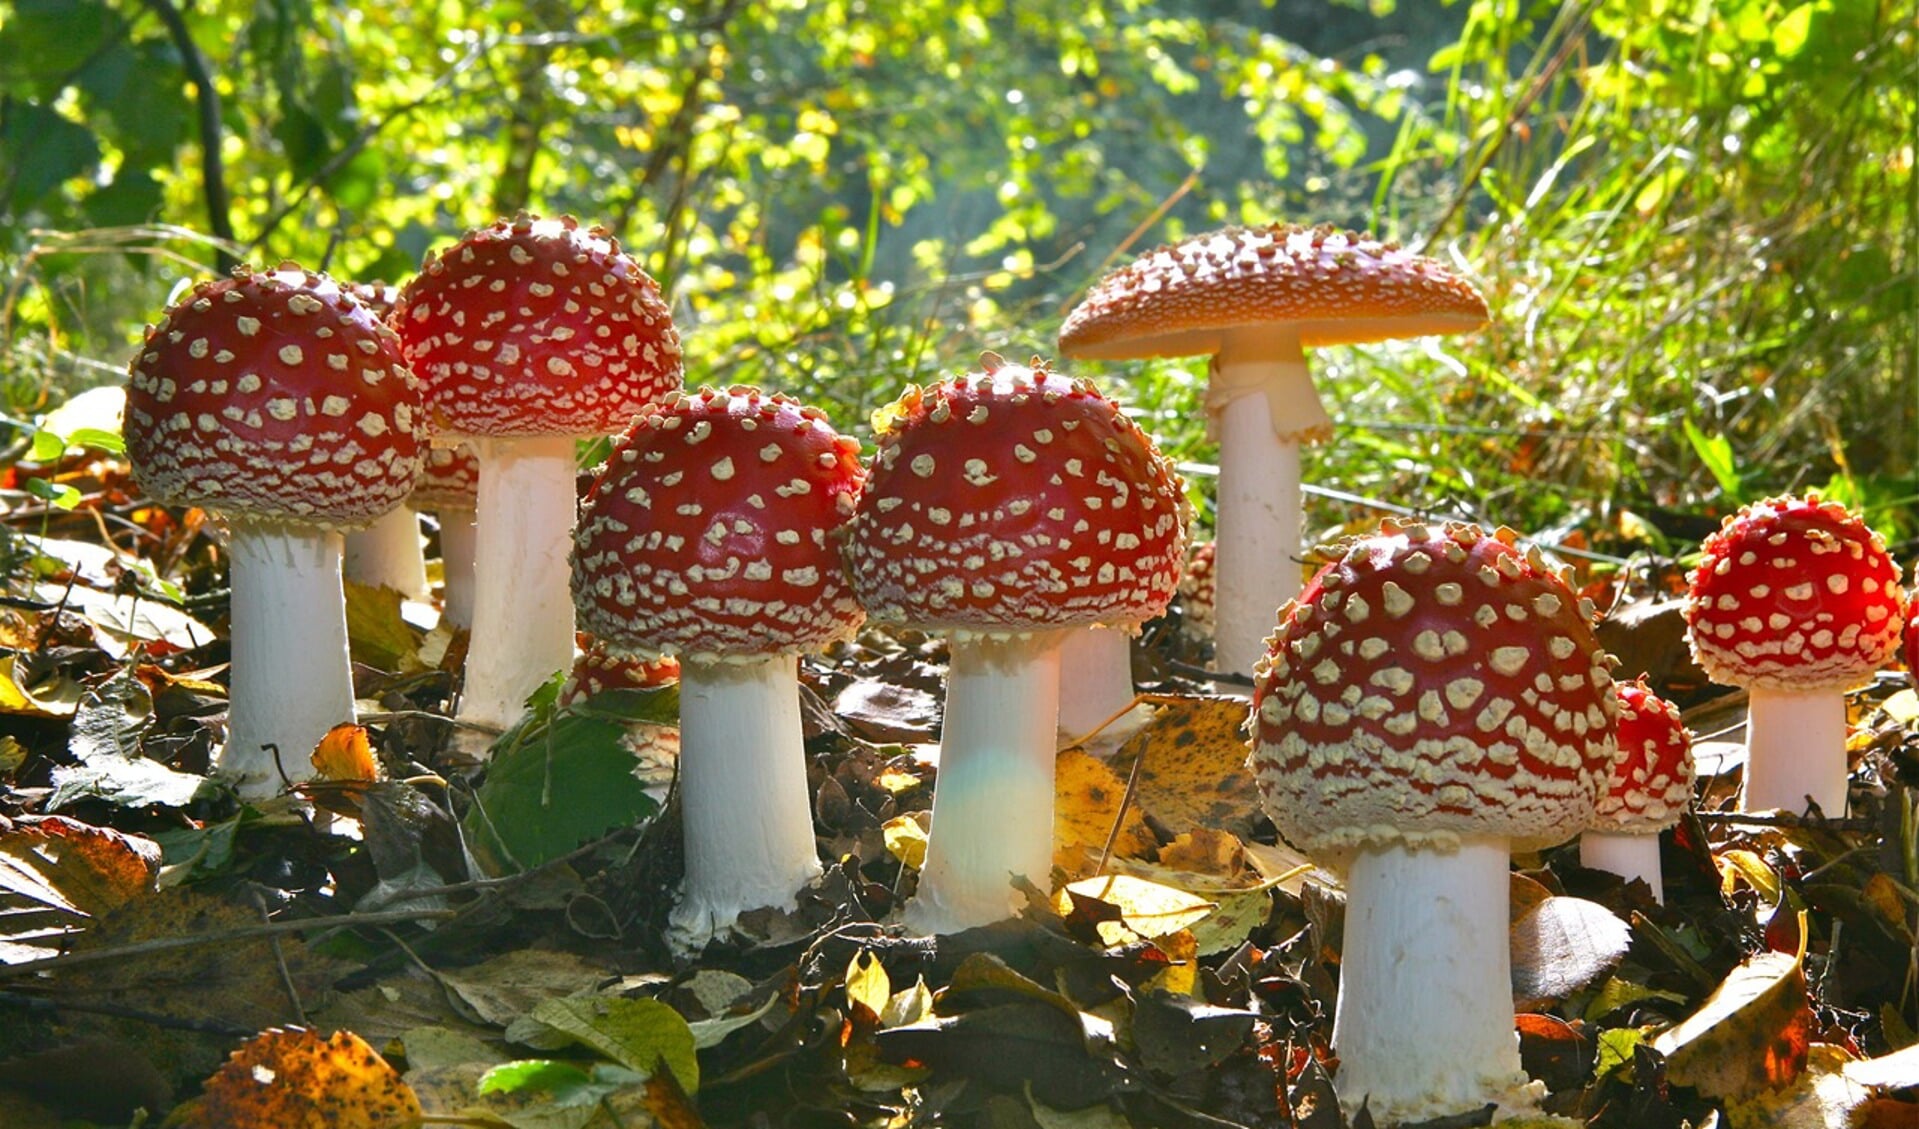 De vliegenzwam is een veel voorkomende paddenstoel in de Nederlandse natuur. foto: Geert de Vries)